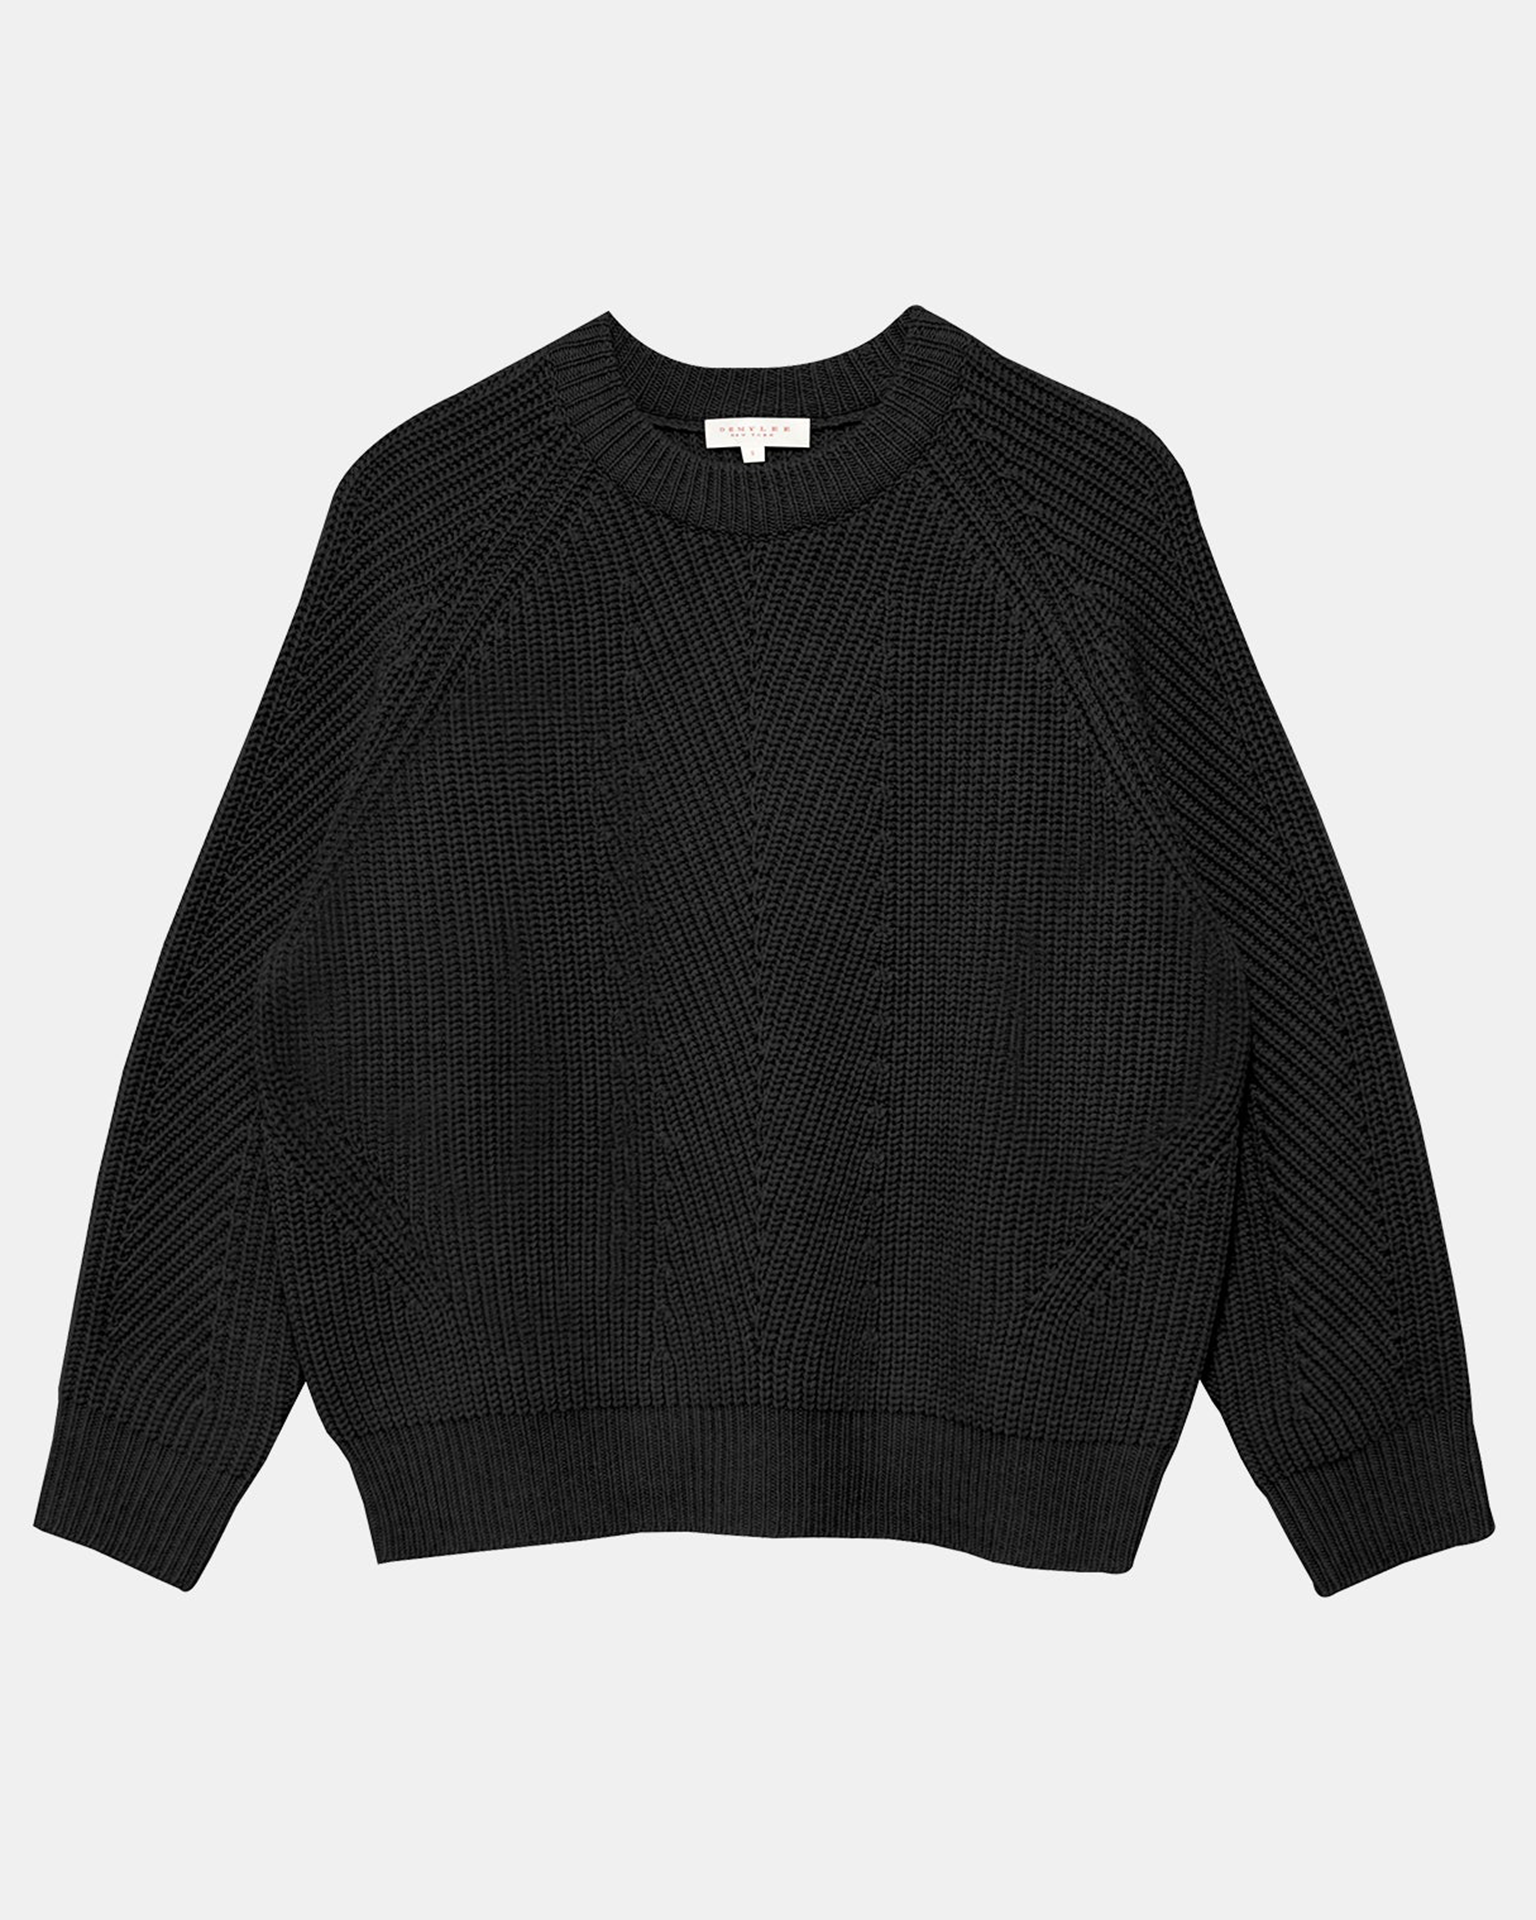 Demylee Chelsea Raglan Wool Sweater in Black- Bliss Boutiques